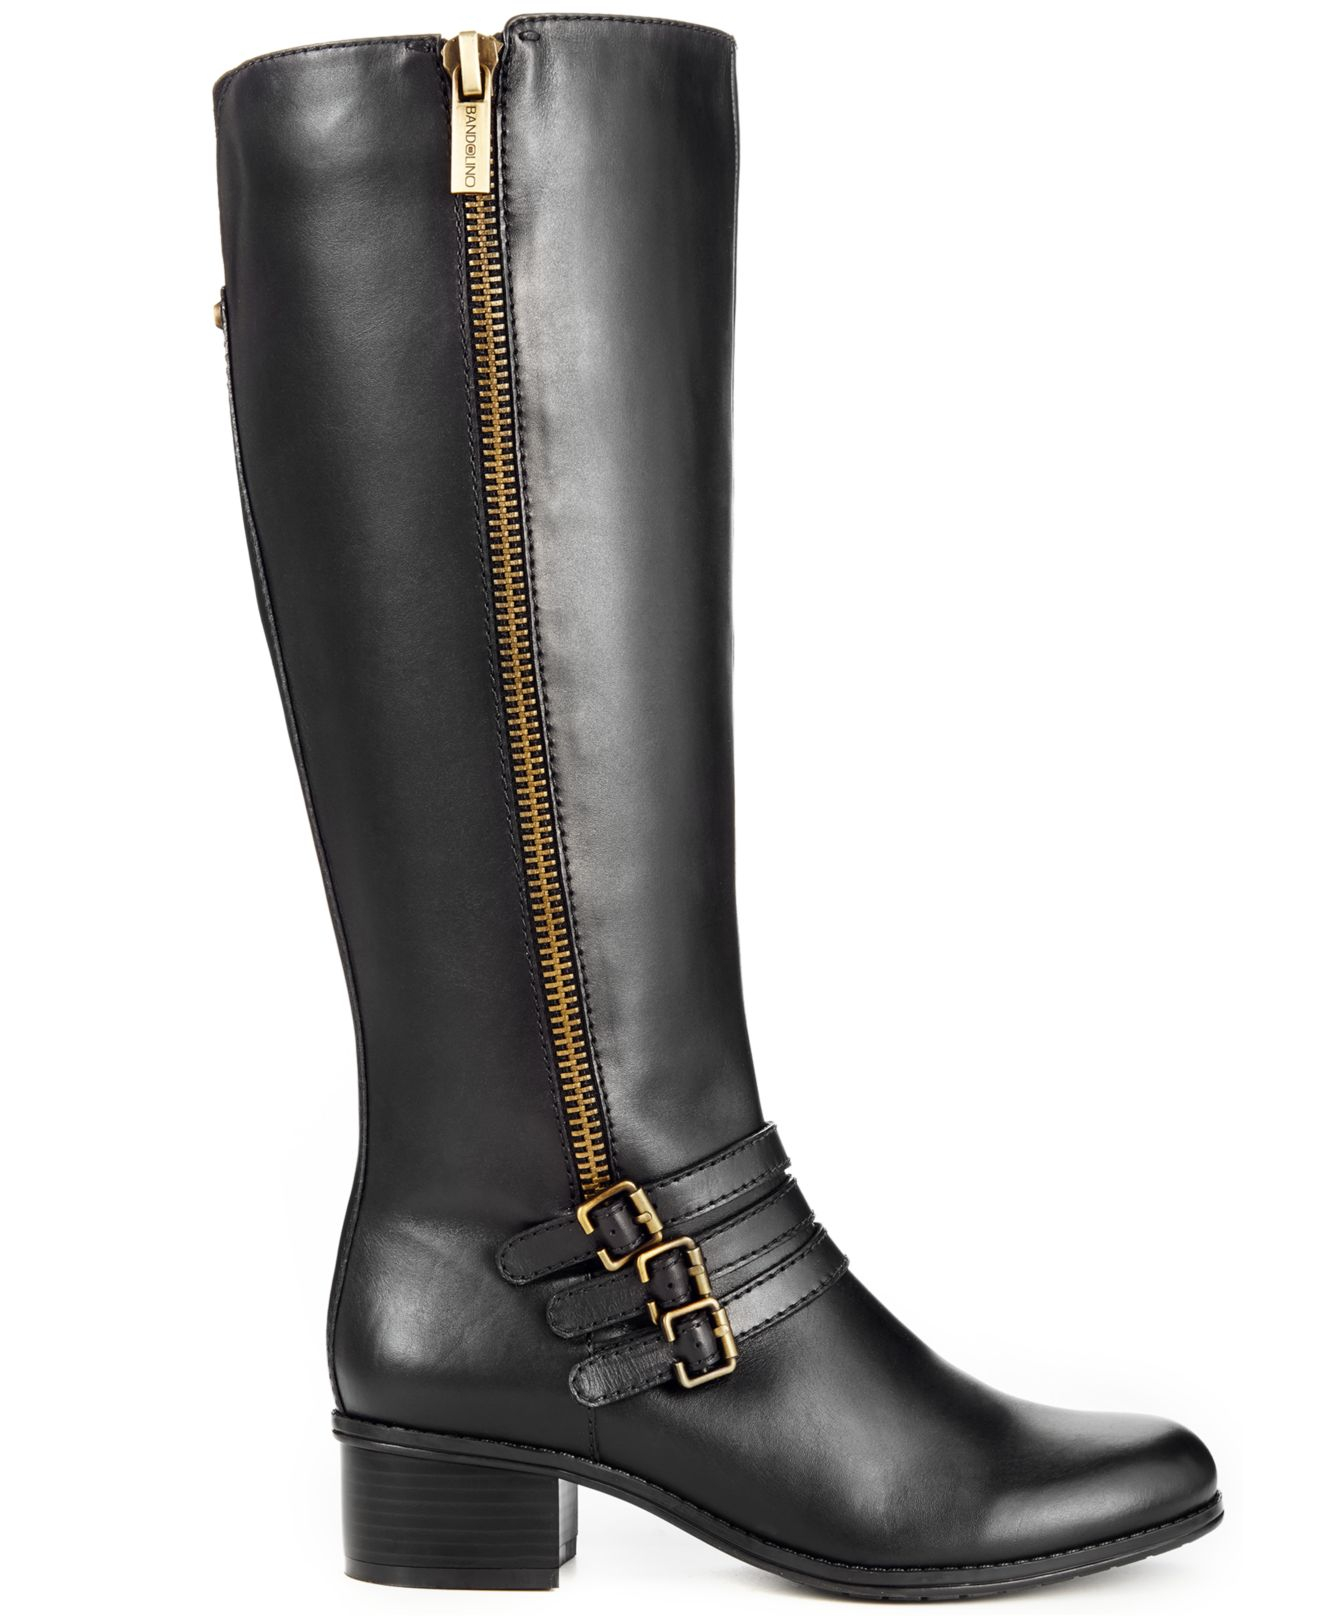 Bandolino Carsononia Tall Riding Boots in Black | Lyst